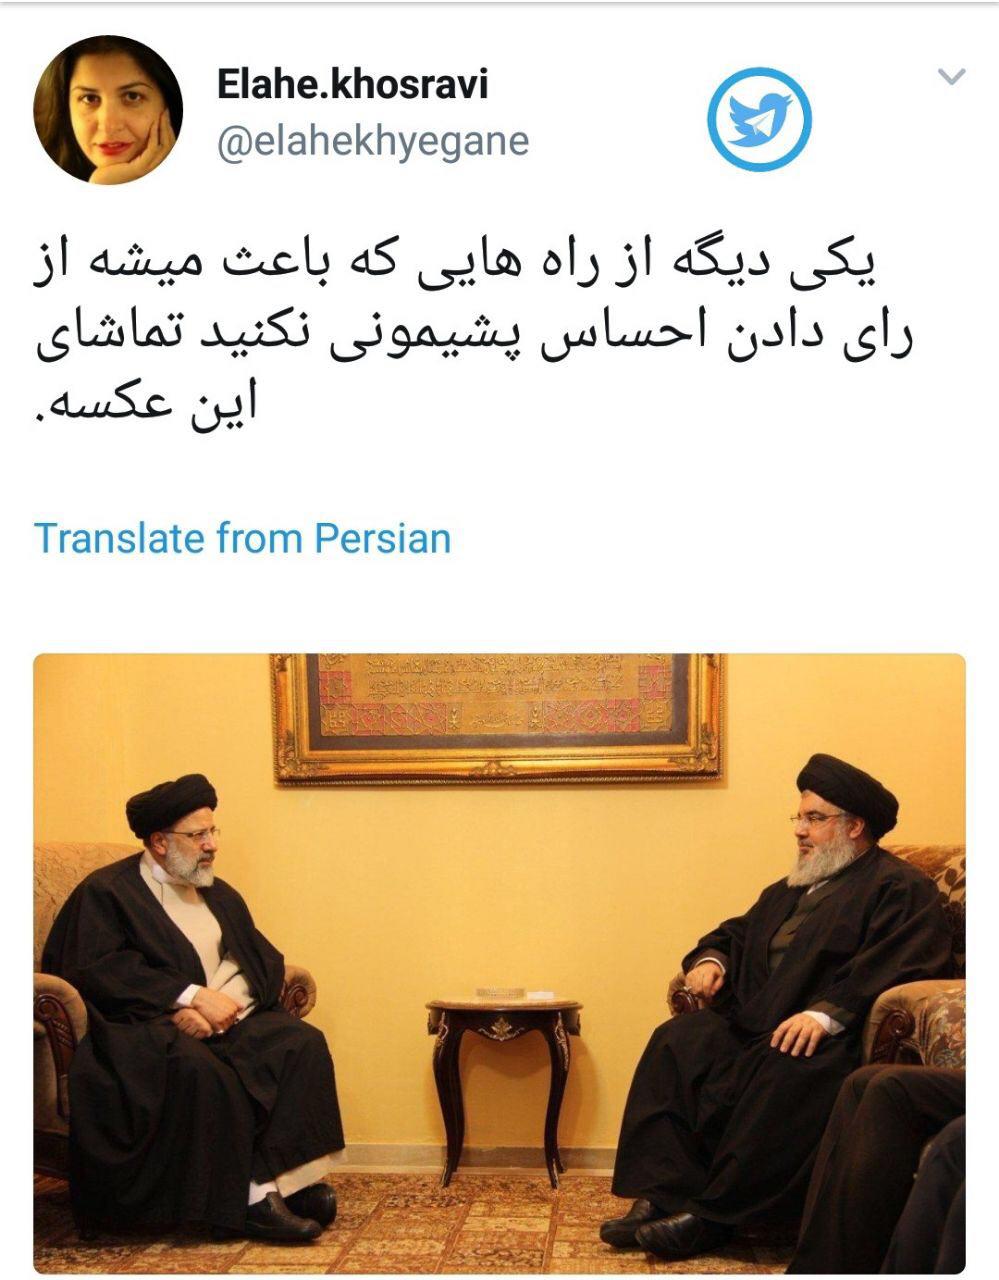 دشمنی دبیر فرهنگی ارگان دولت با دبیرکل حزب الله!؟ + عکس